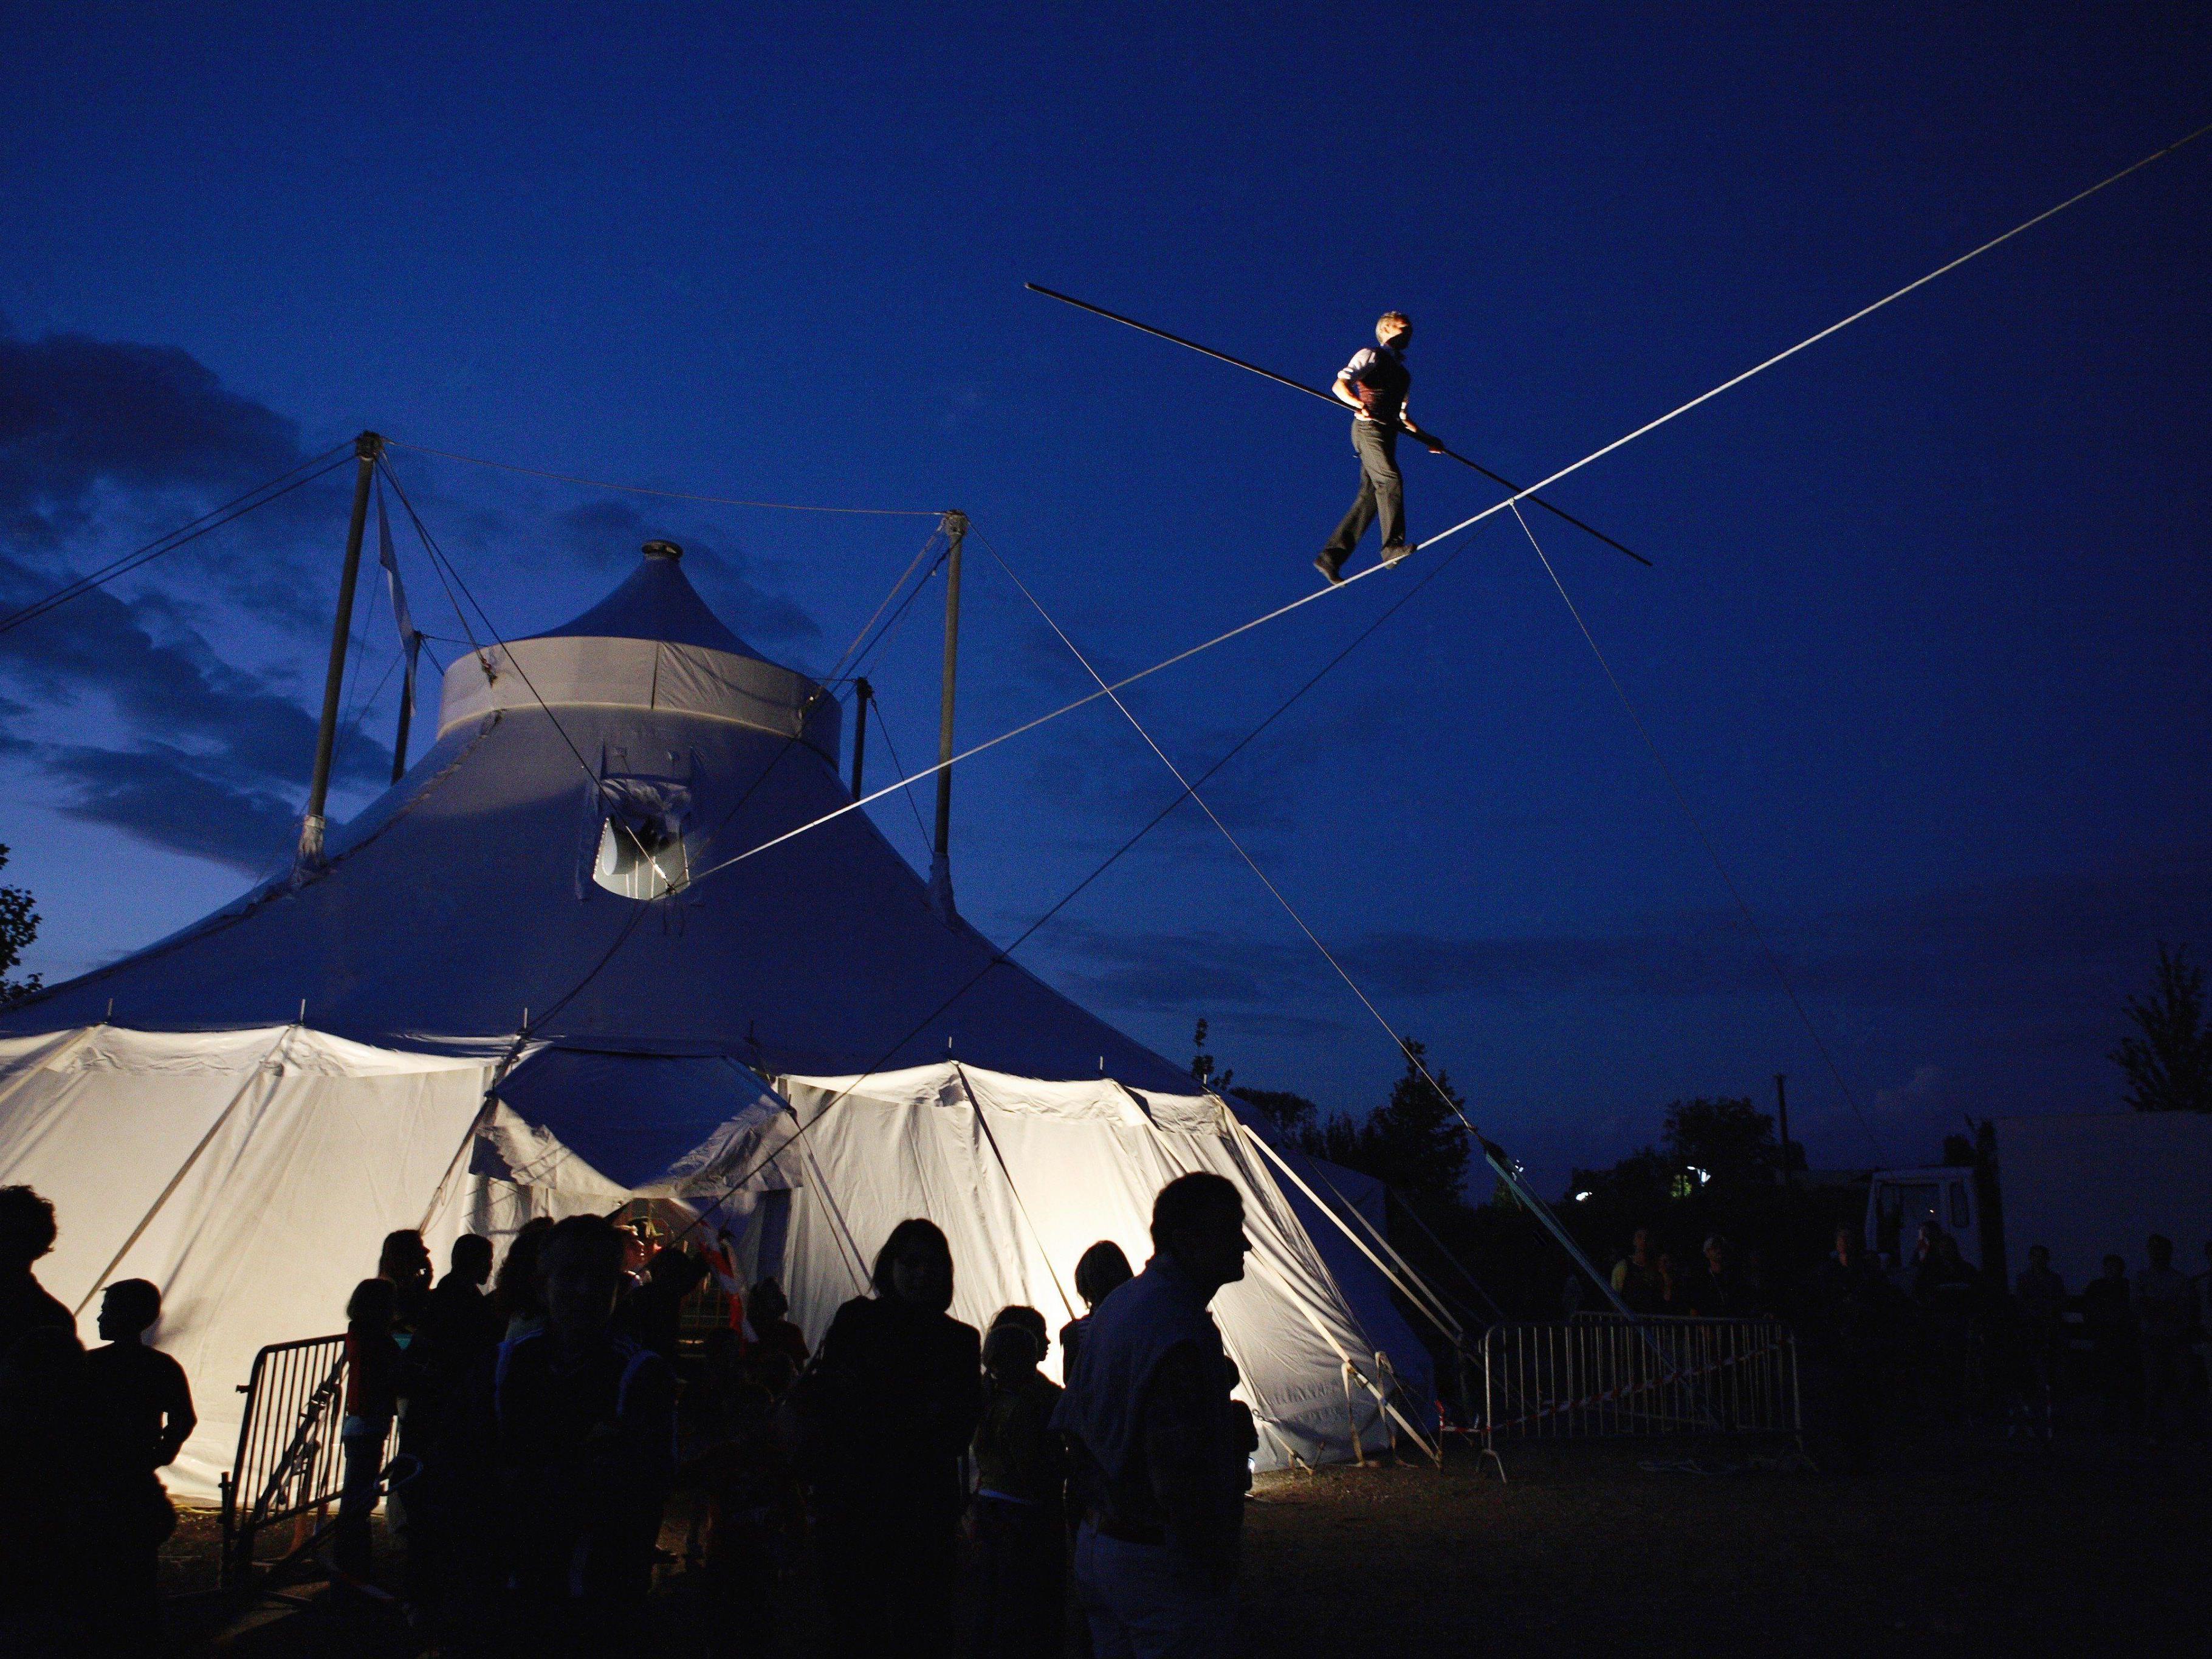 Anfang September entführt das schaulust-Team seine Besucherinnen und Besucher wieder in die faszinierende Welt des Circus.